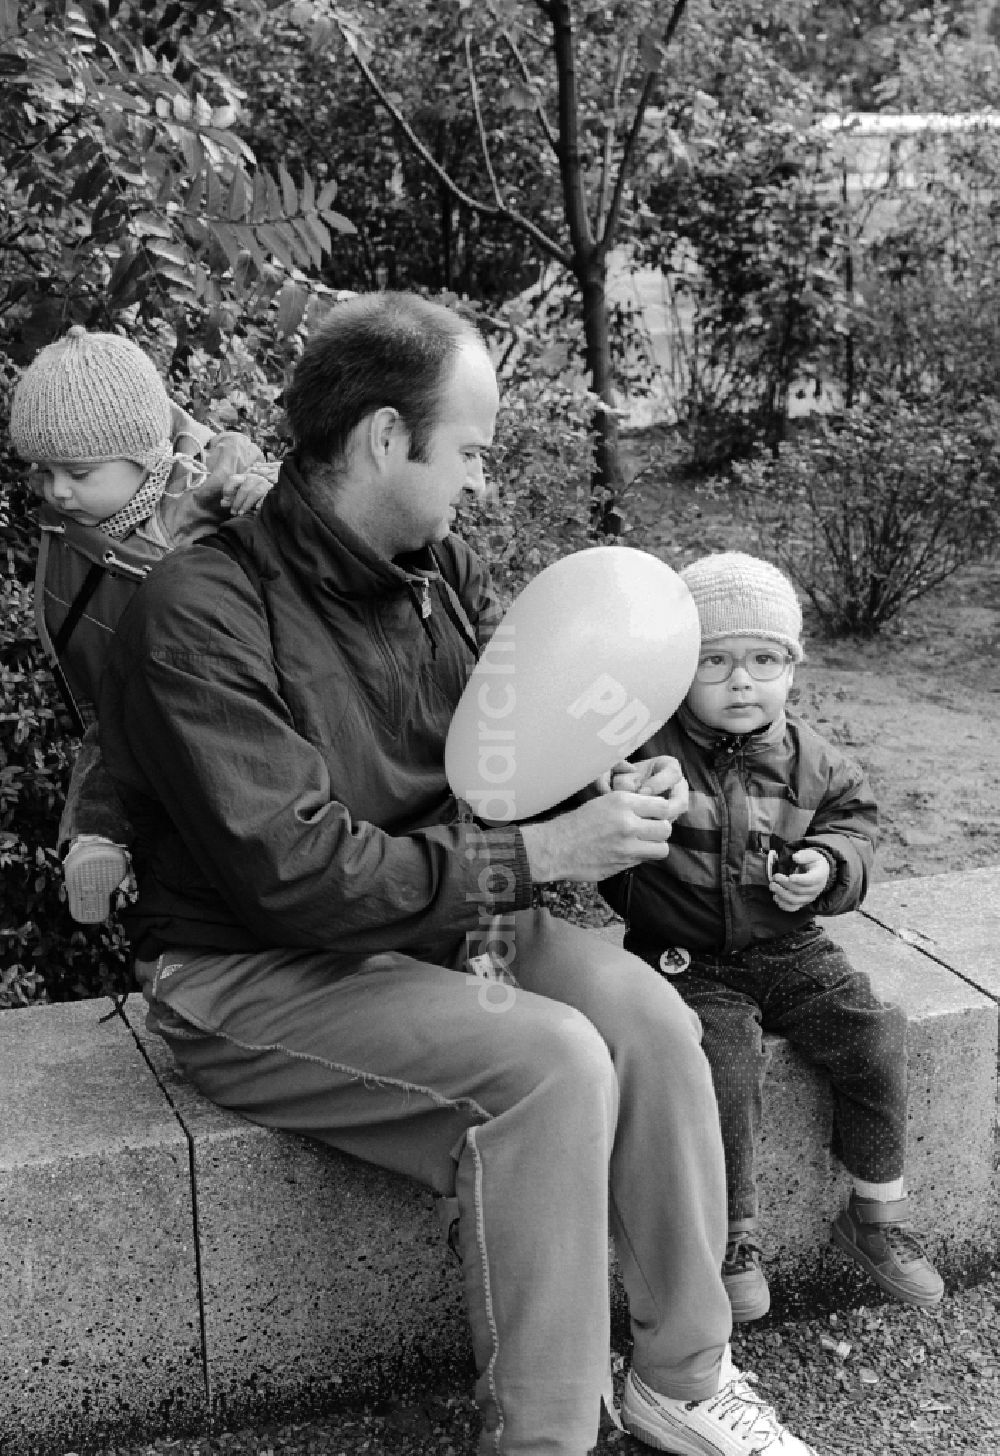 DDR-Fotoarchiv: Berlin - Vater mit zwei Kindern in Berlin, der ehemaligen Hauptstadt der DDR, Deutsche Demokratische Republik